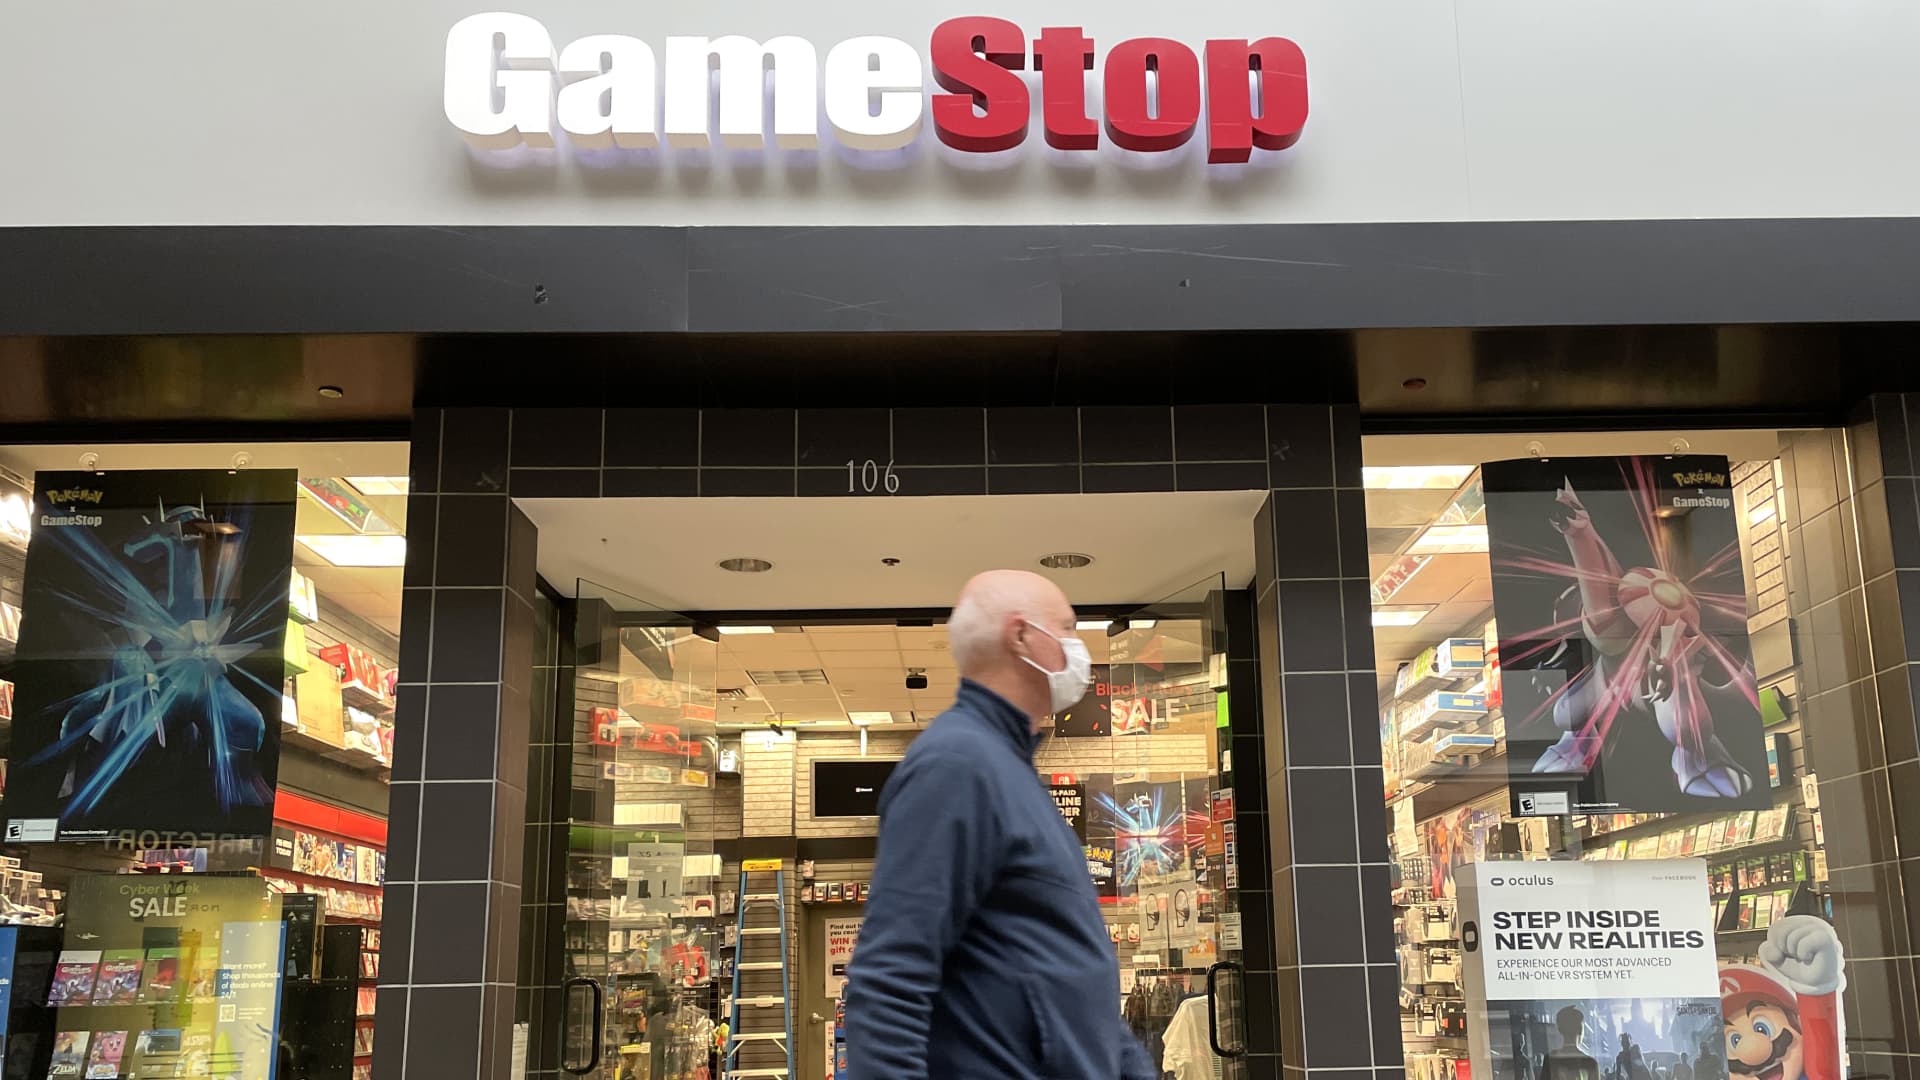 GameStop (GME) Q4 2021 earnings